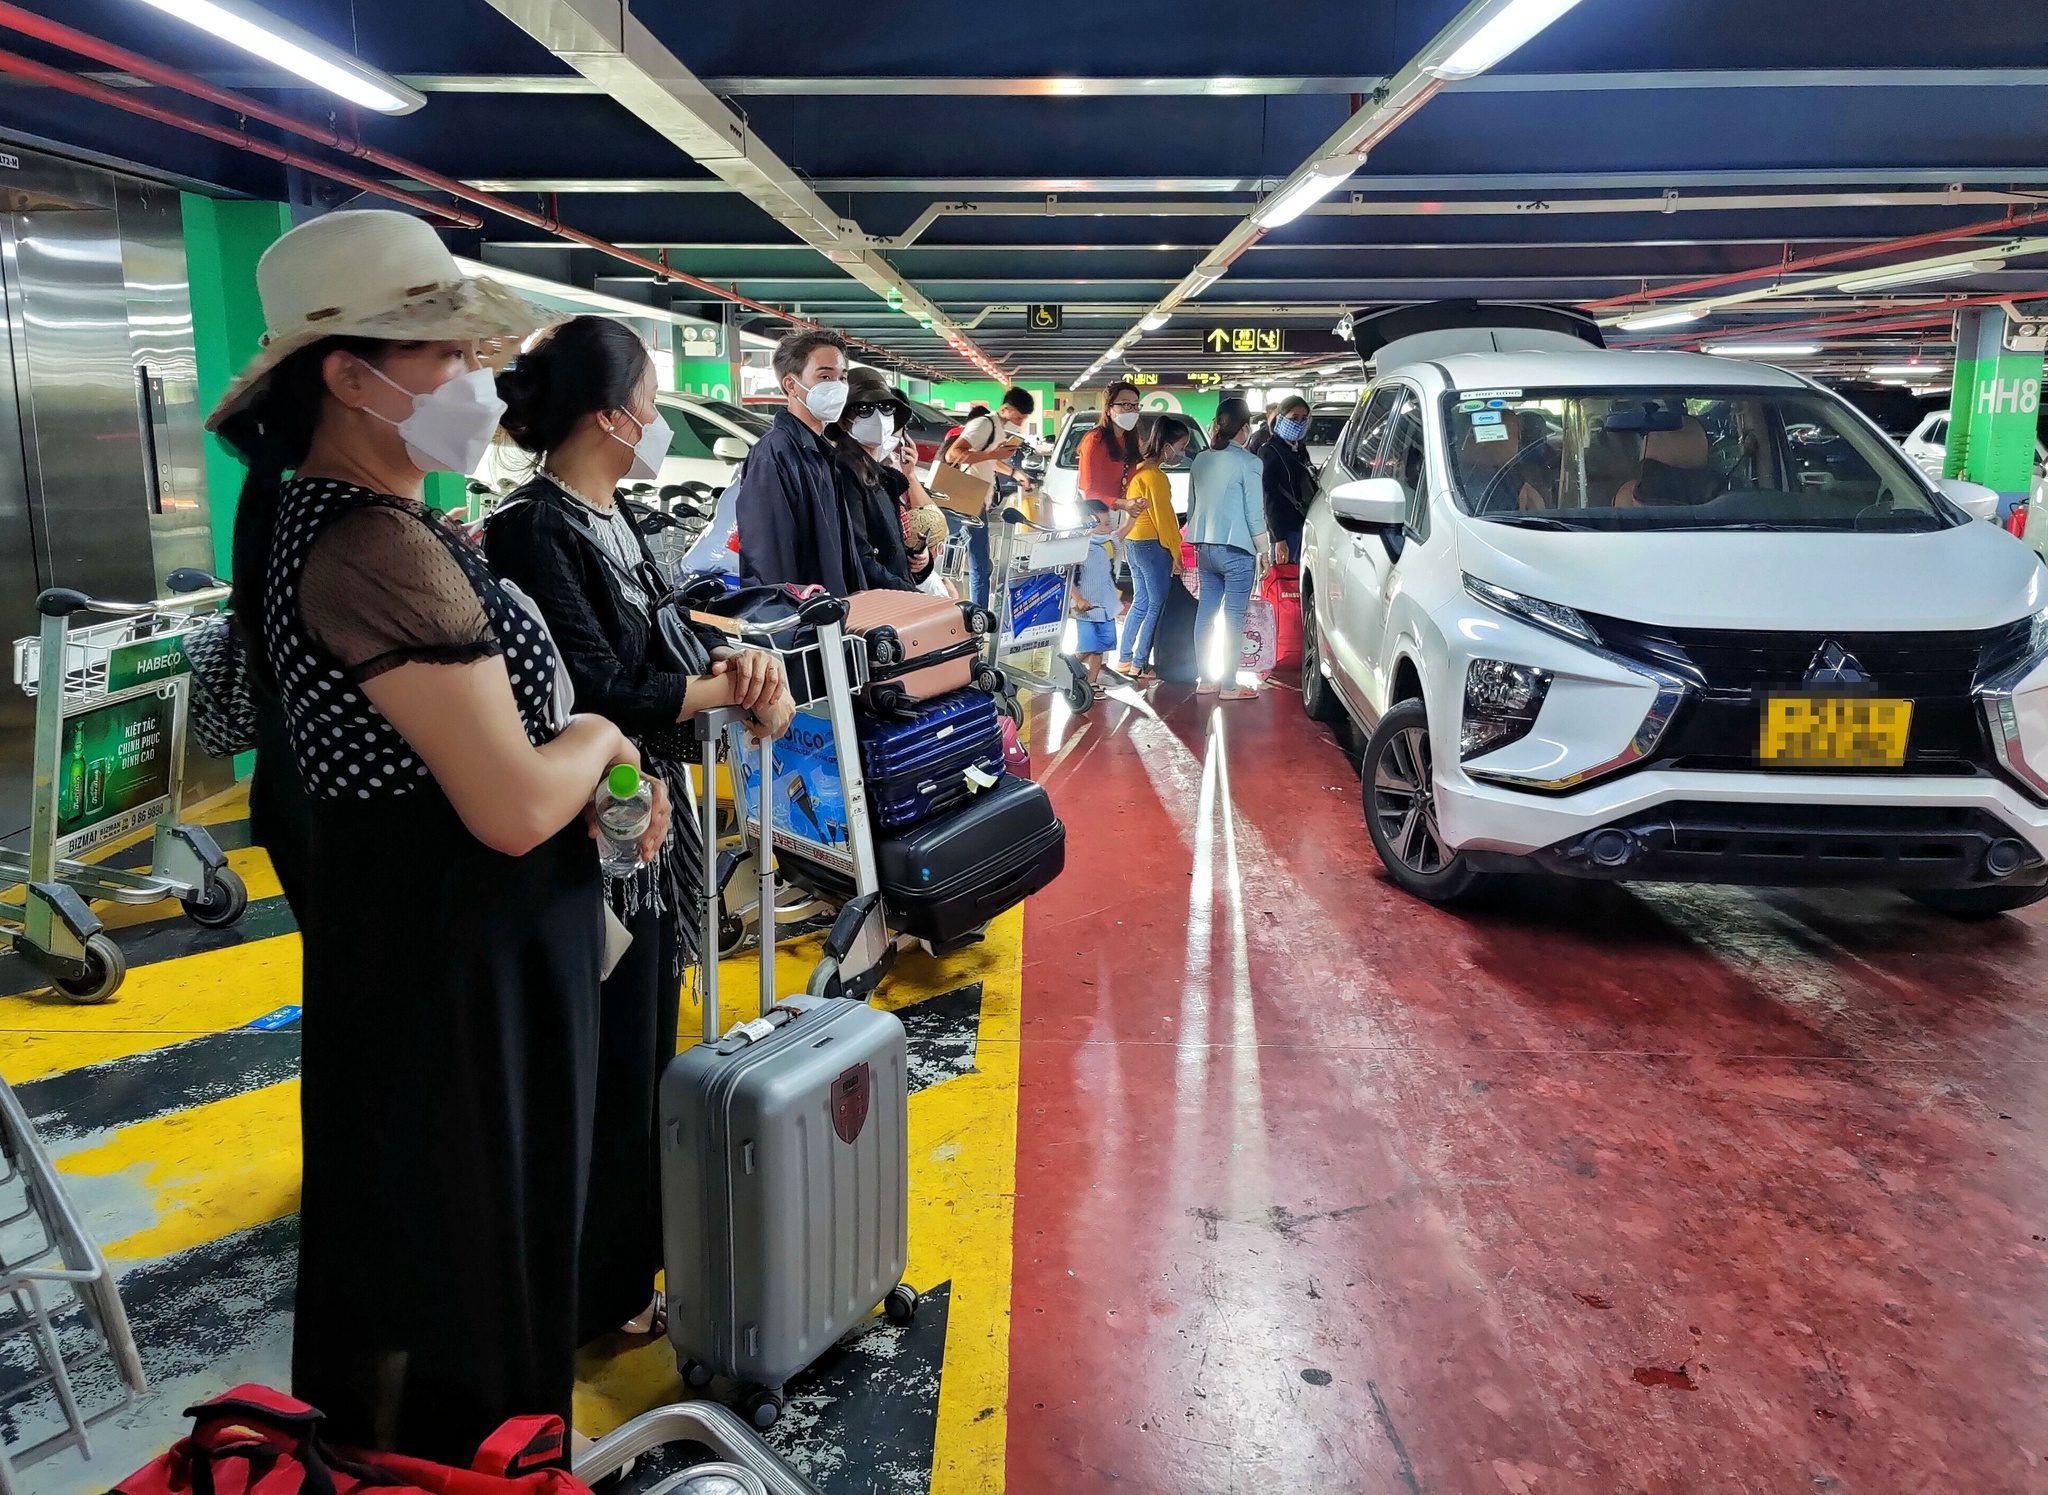 Dẹp nạn bát nháo taxi tại sân bay Tân Sơn Nhất - ảnh 1